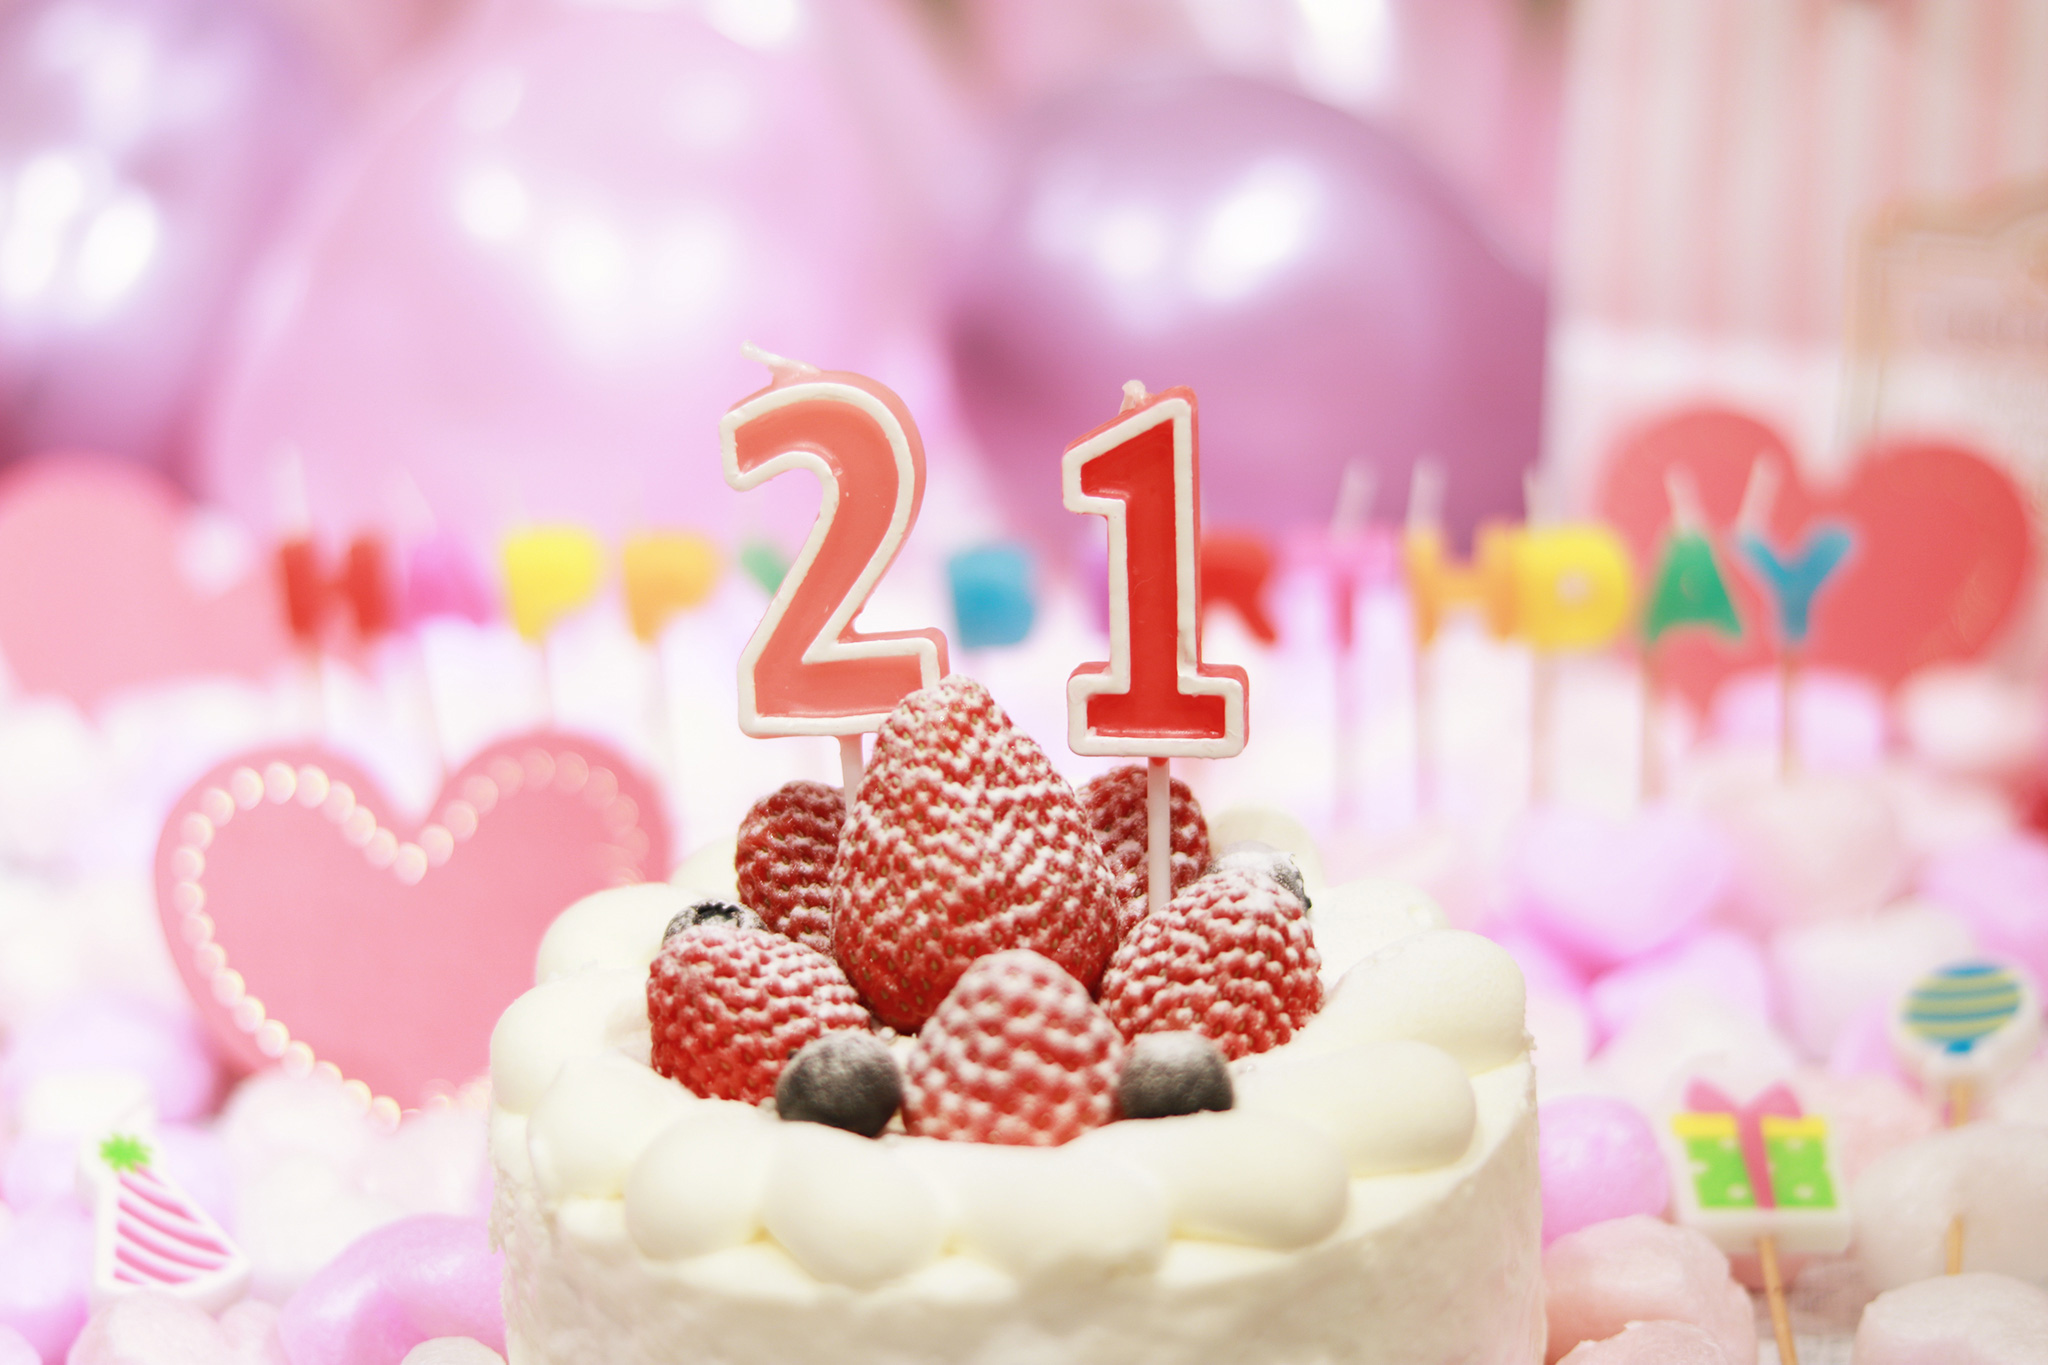 オシャレな誕生日画像 可愛いケーキとキャンドルでお祝い 21歳編 のフリー画像 おしゃれなフリー写真素材 Girly Drop